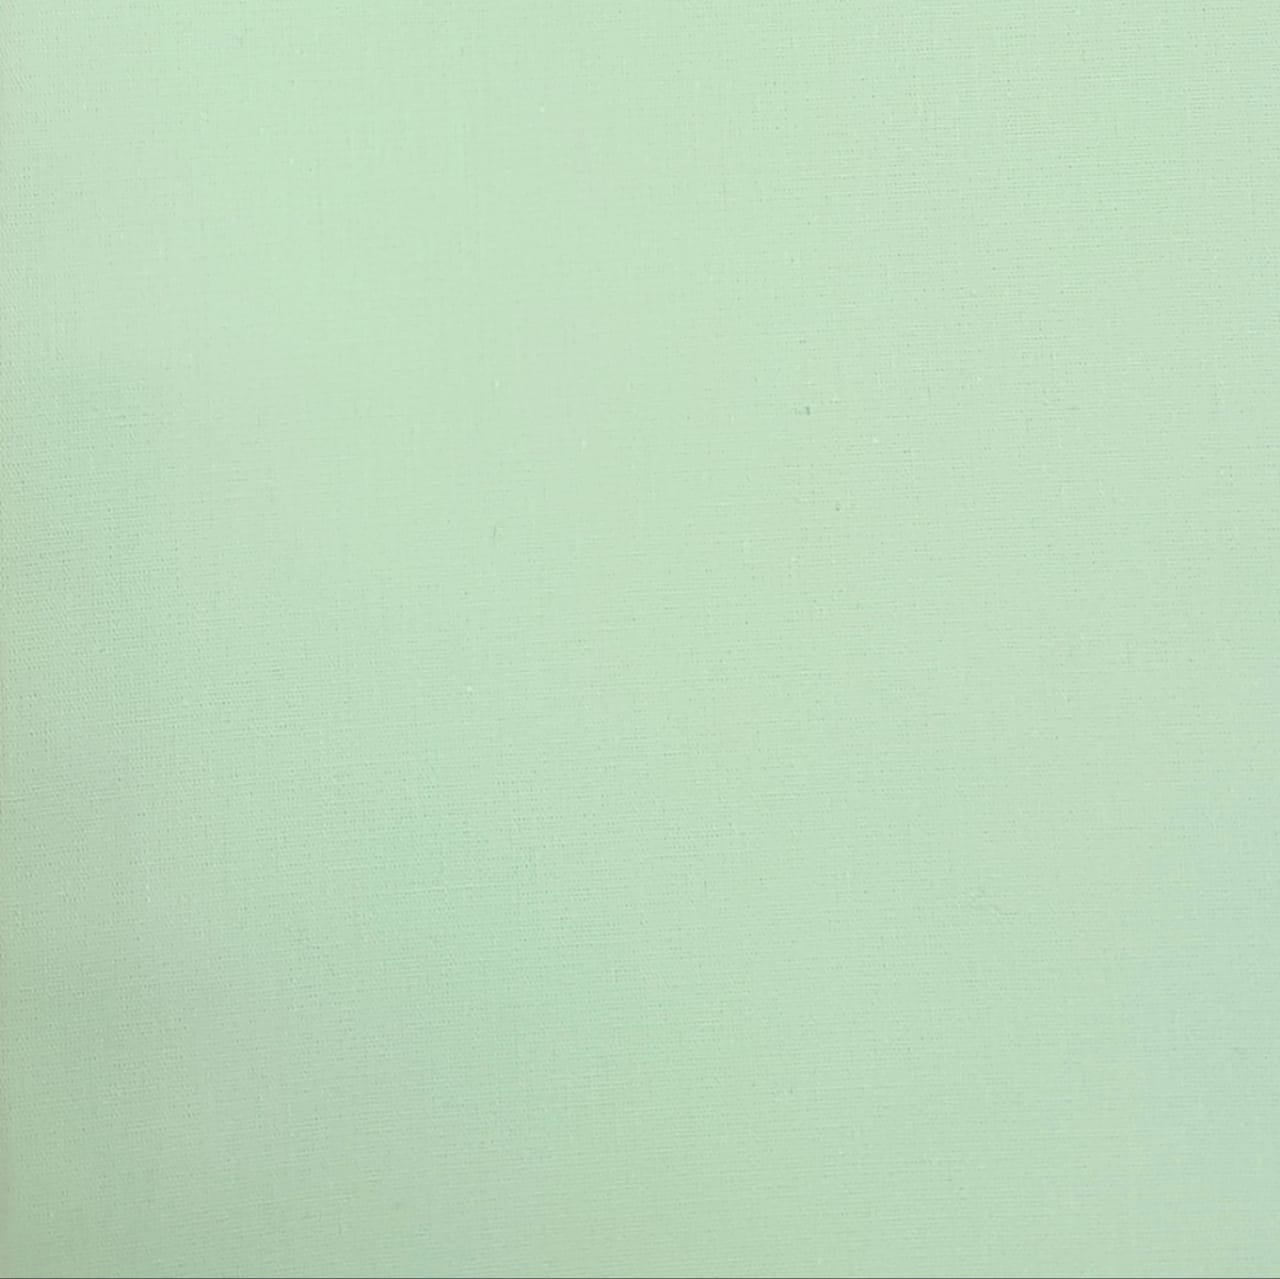 Verde água - tricoline / 100% algodão - 0,50cm x 1,50m